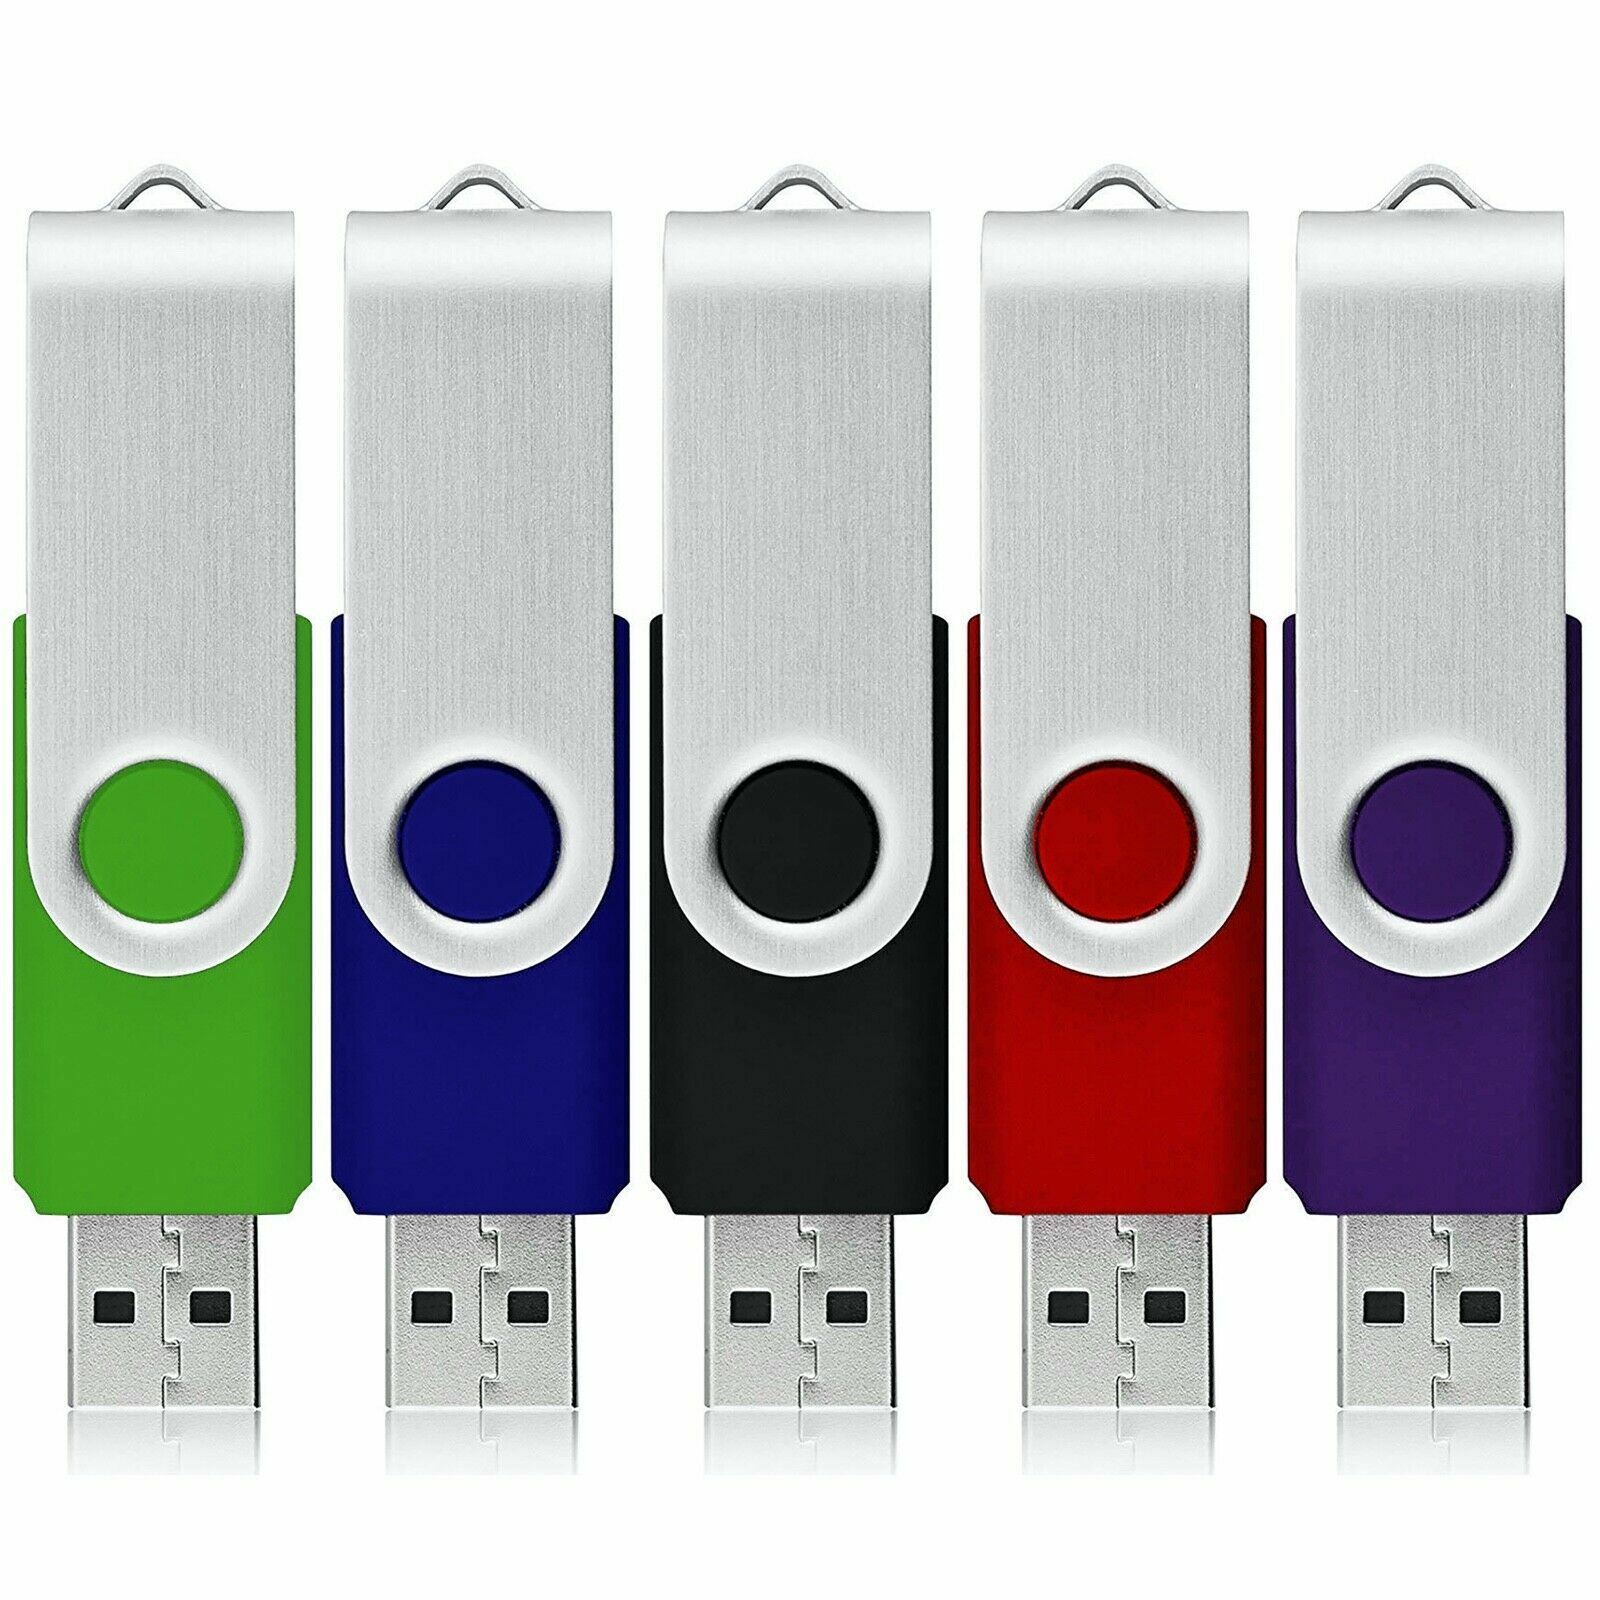 ZIPPY USB Flash Drive Memory Stick Pendrive Thumb Drive 4GB, 8GB, 32GB, 64GB LOT